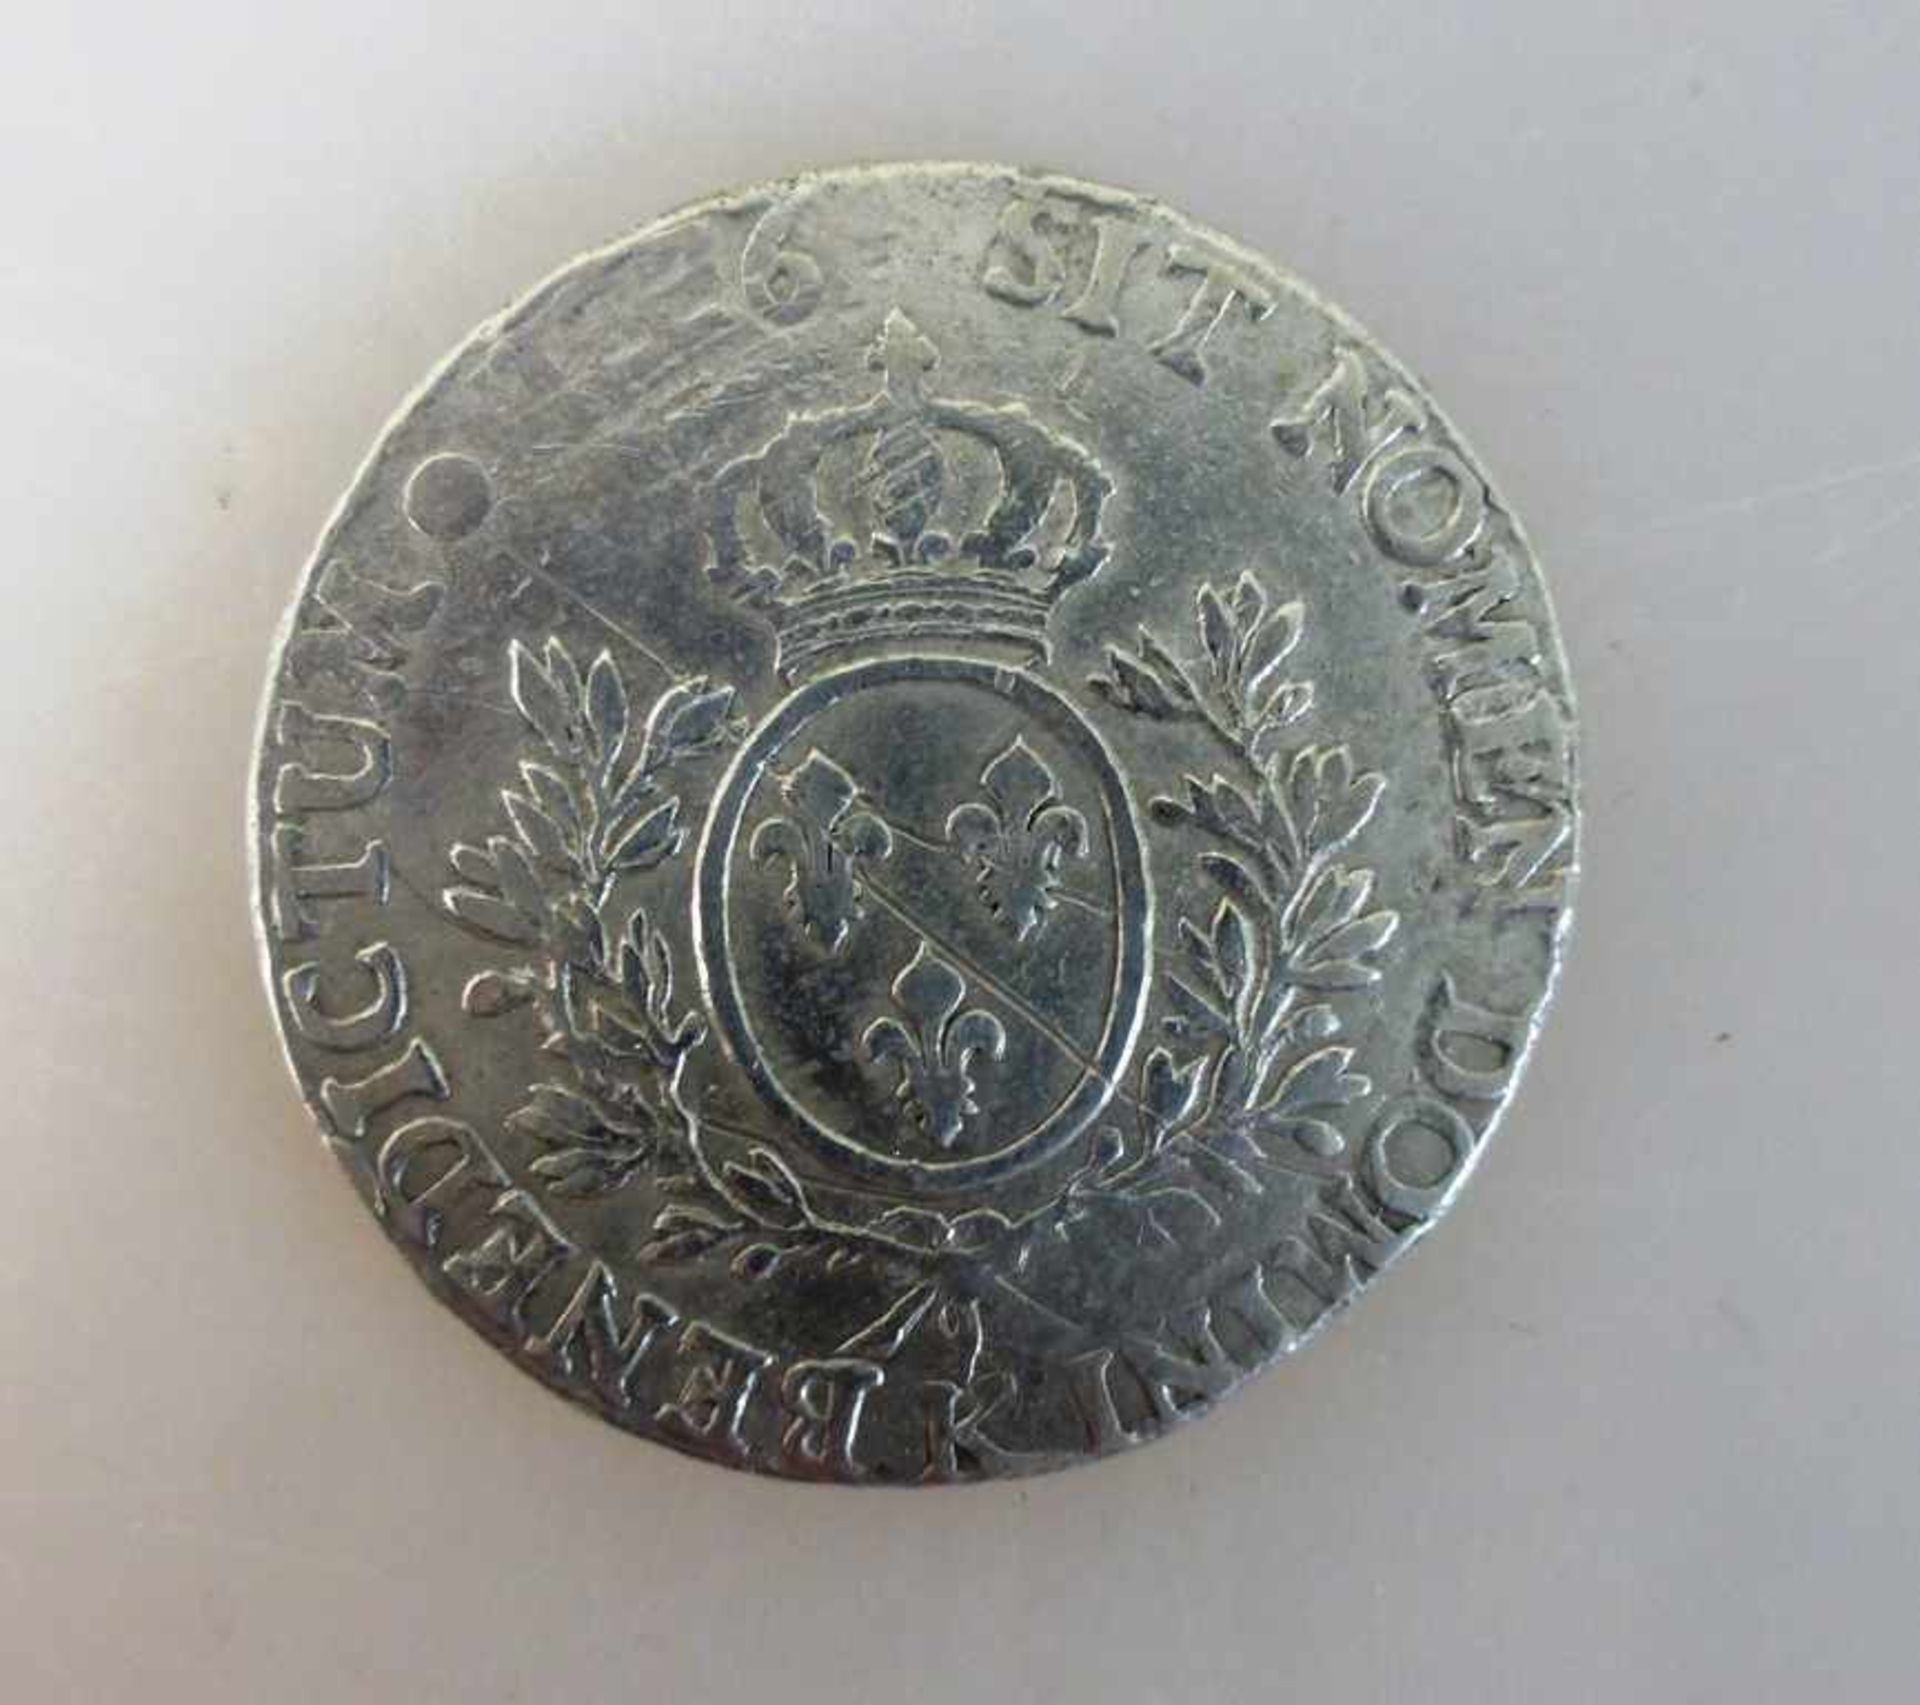 Frankreich - 1 ECU - 1776K ss+, Silber, WM564.8 - Image 2 of 2